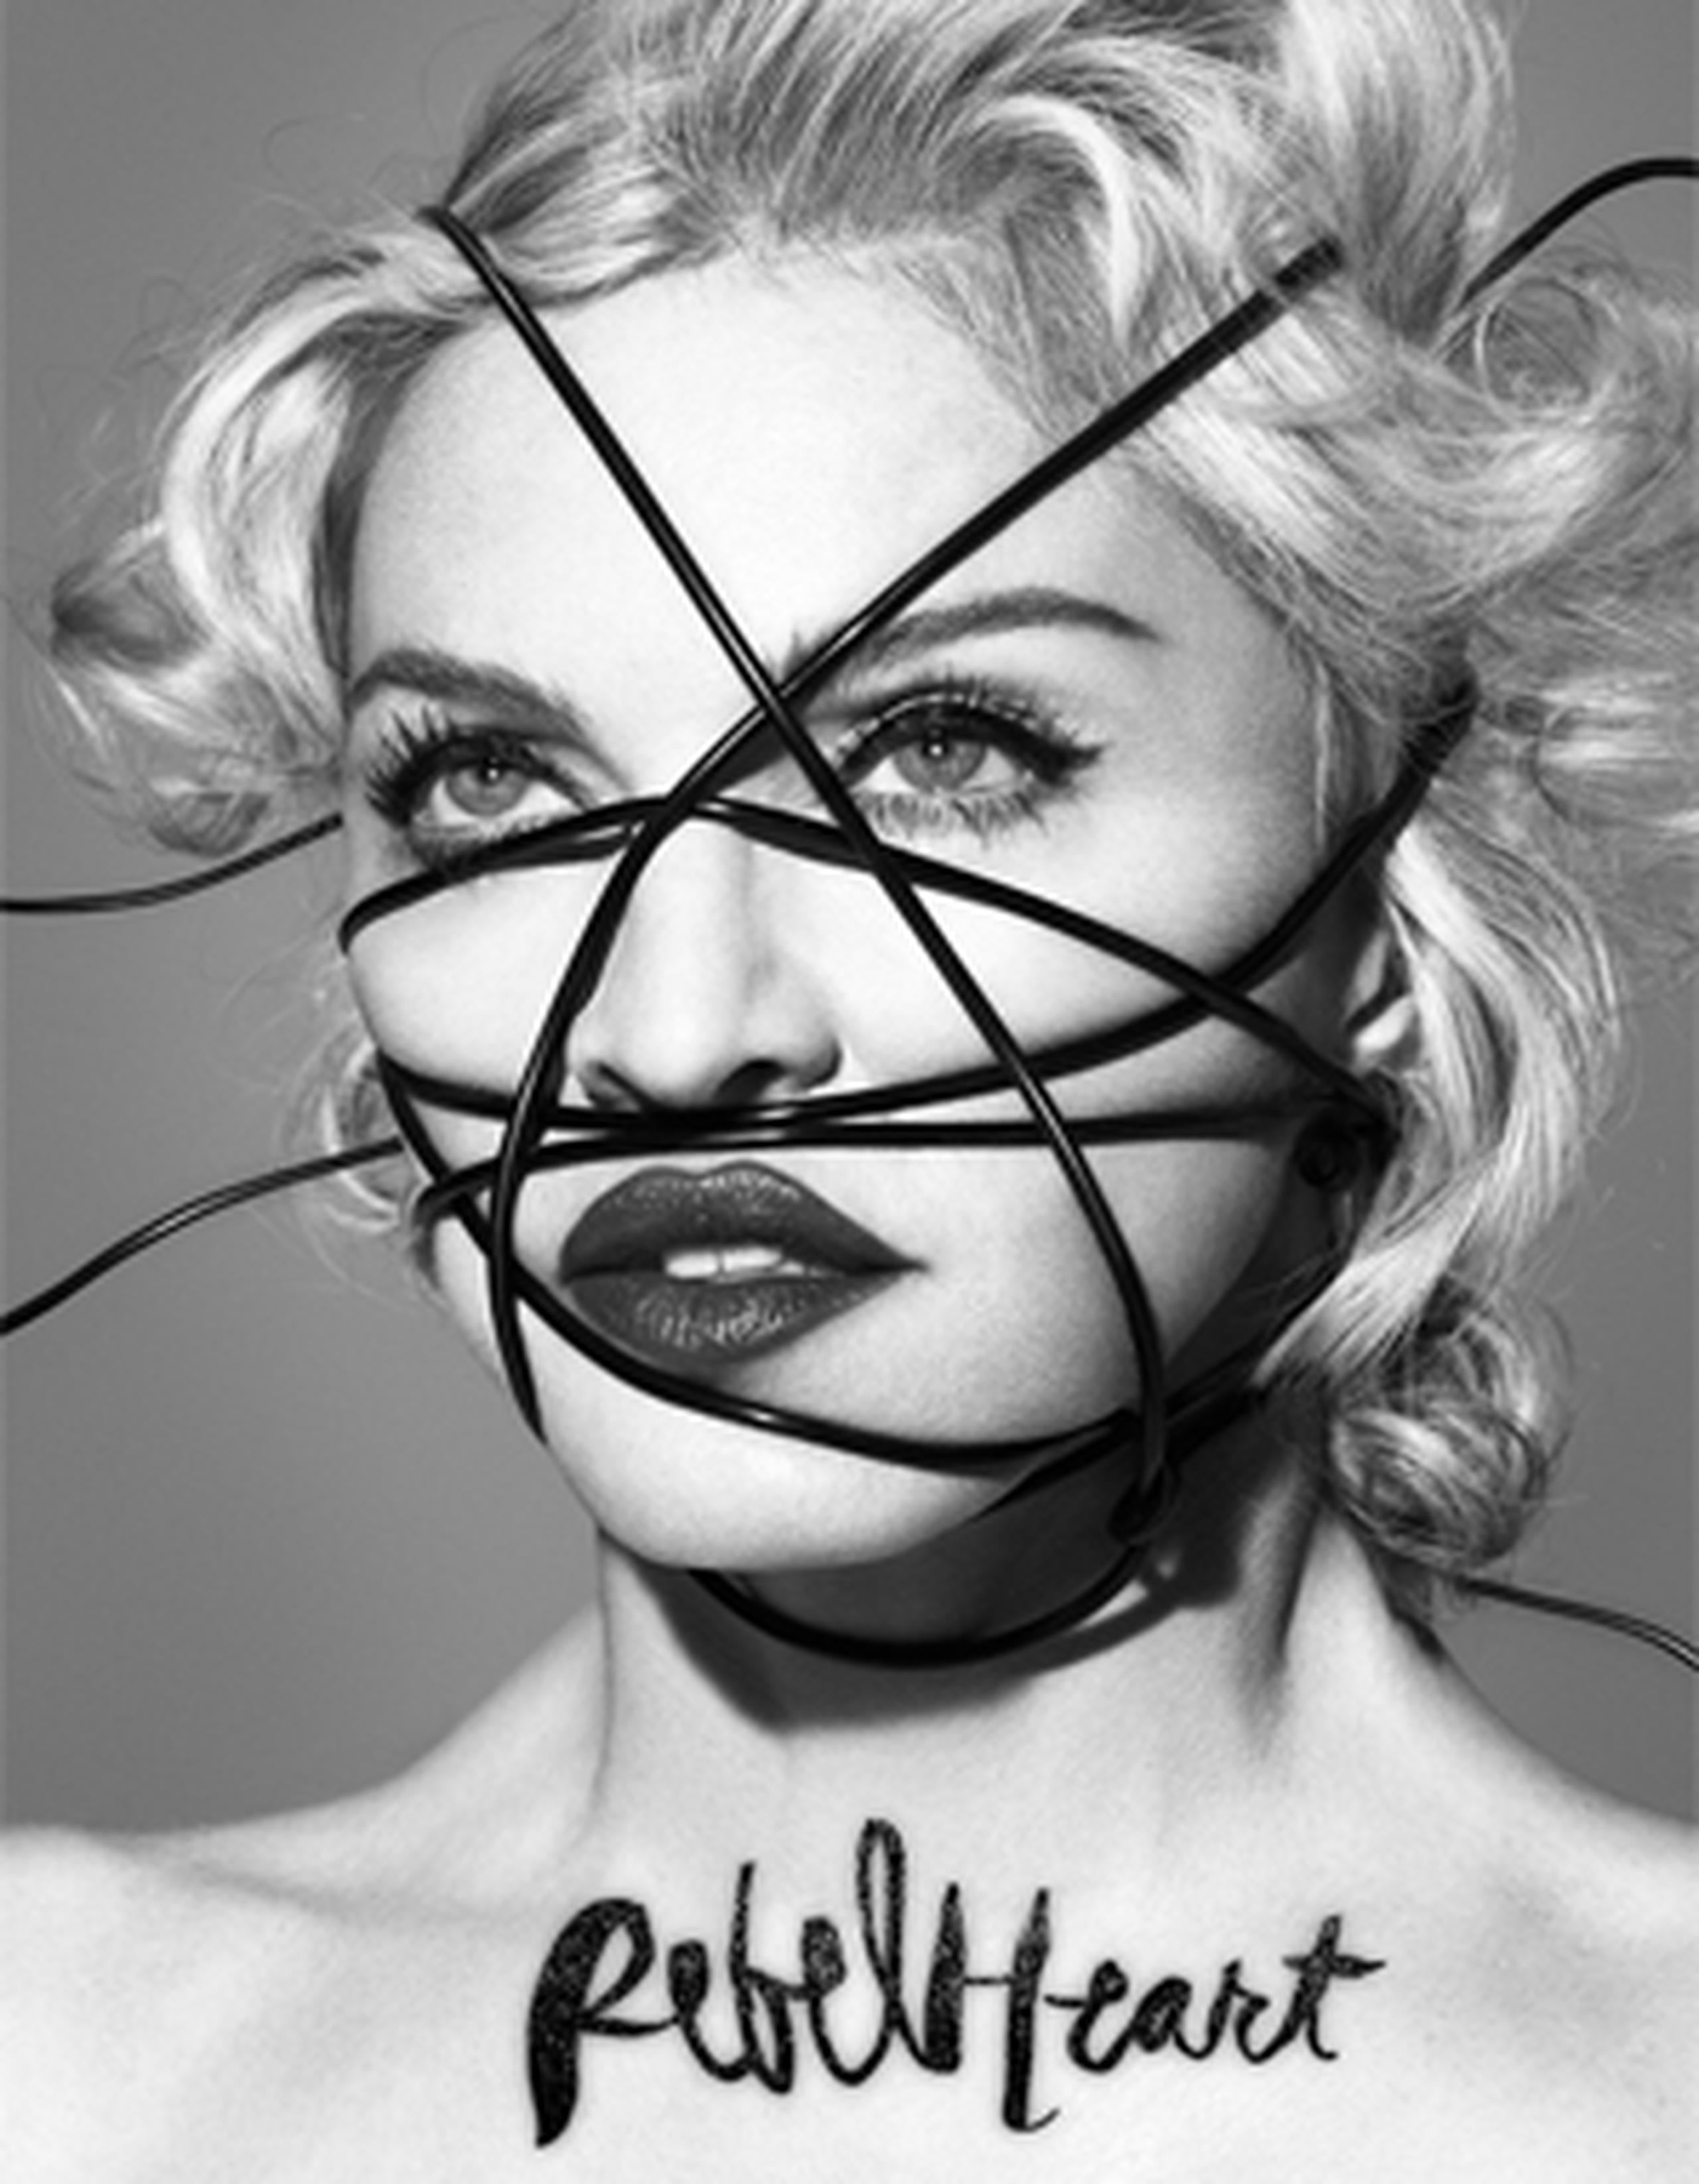 La portada de su último trabajo, "Rebel Heart", es un primer plano de la cara de la artista con una cuerda negra cruzándola. (Suministrada)